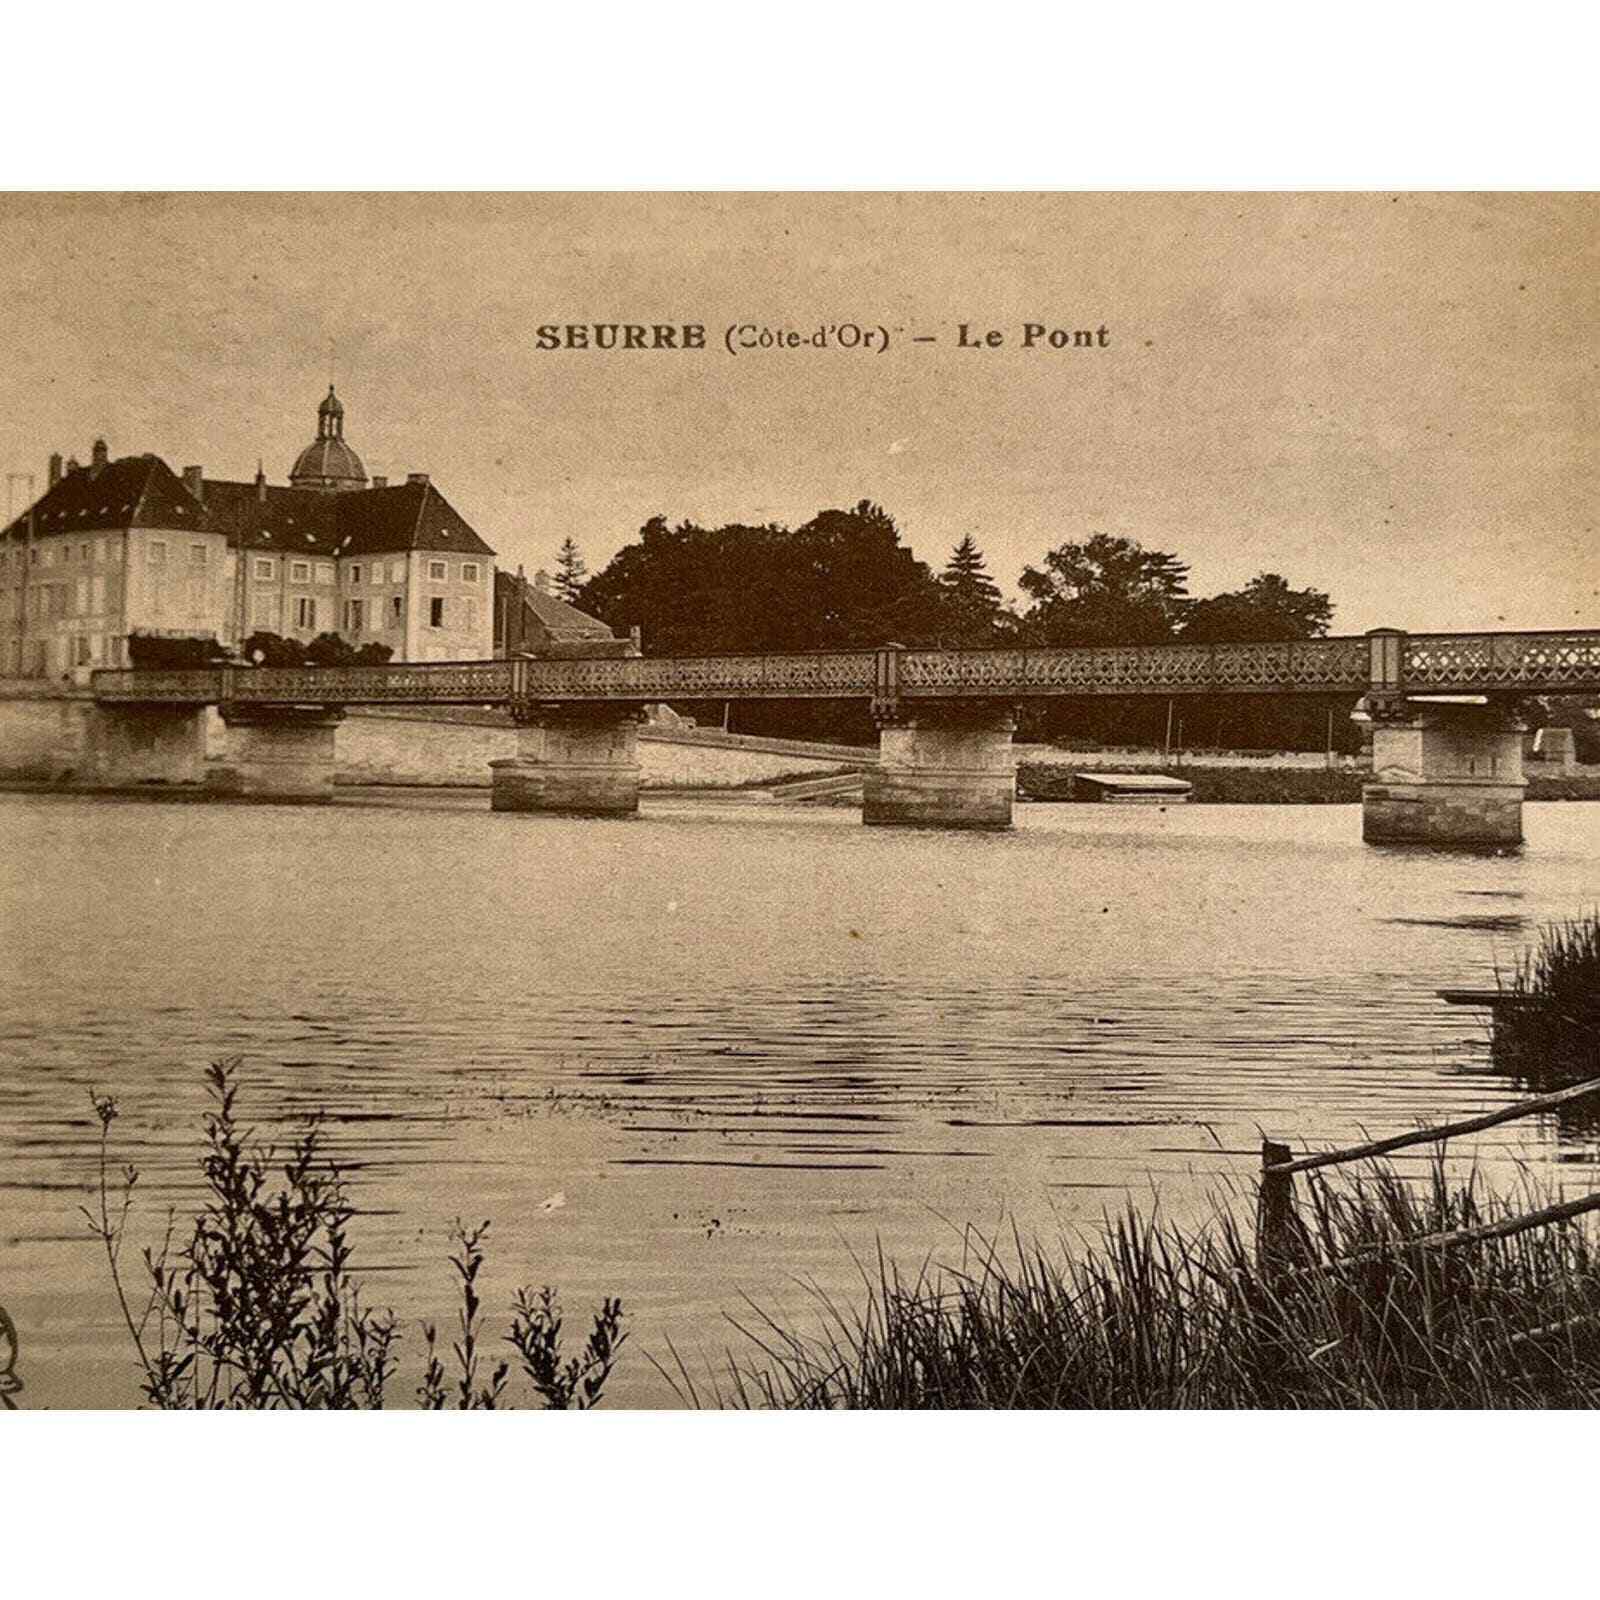 Antique 1900s RPPC Postcard Carte Postale Seurre Côte d’Or ale Pont France SEE